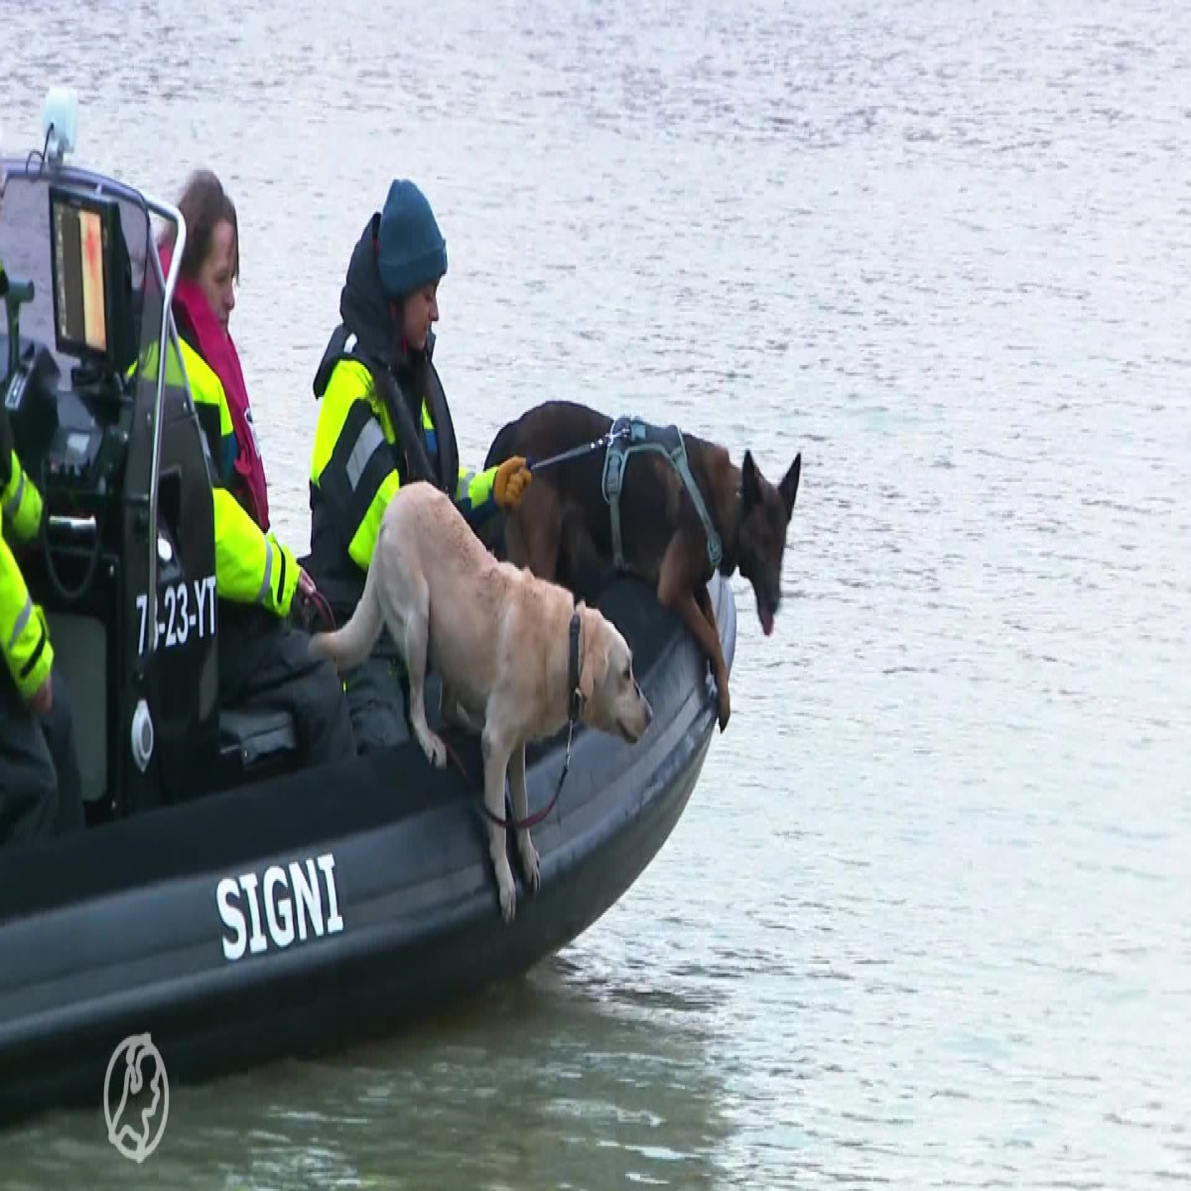 2 zoekhonden in een boot van non-profit stichting Signi